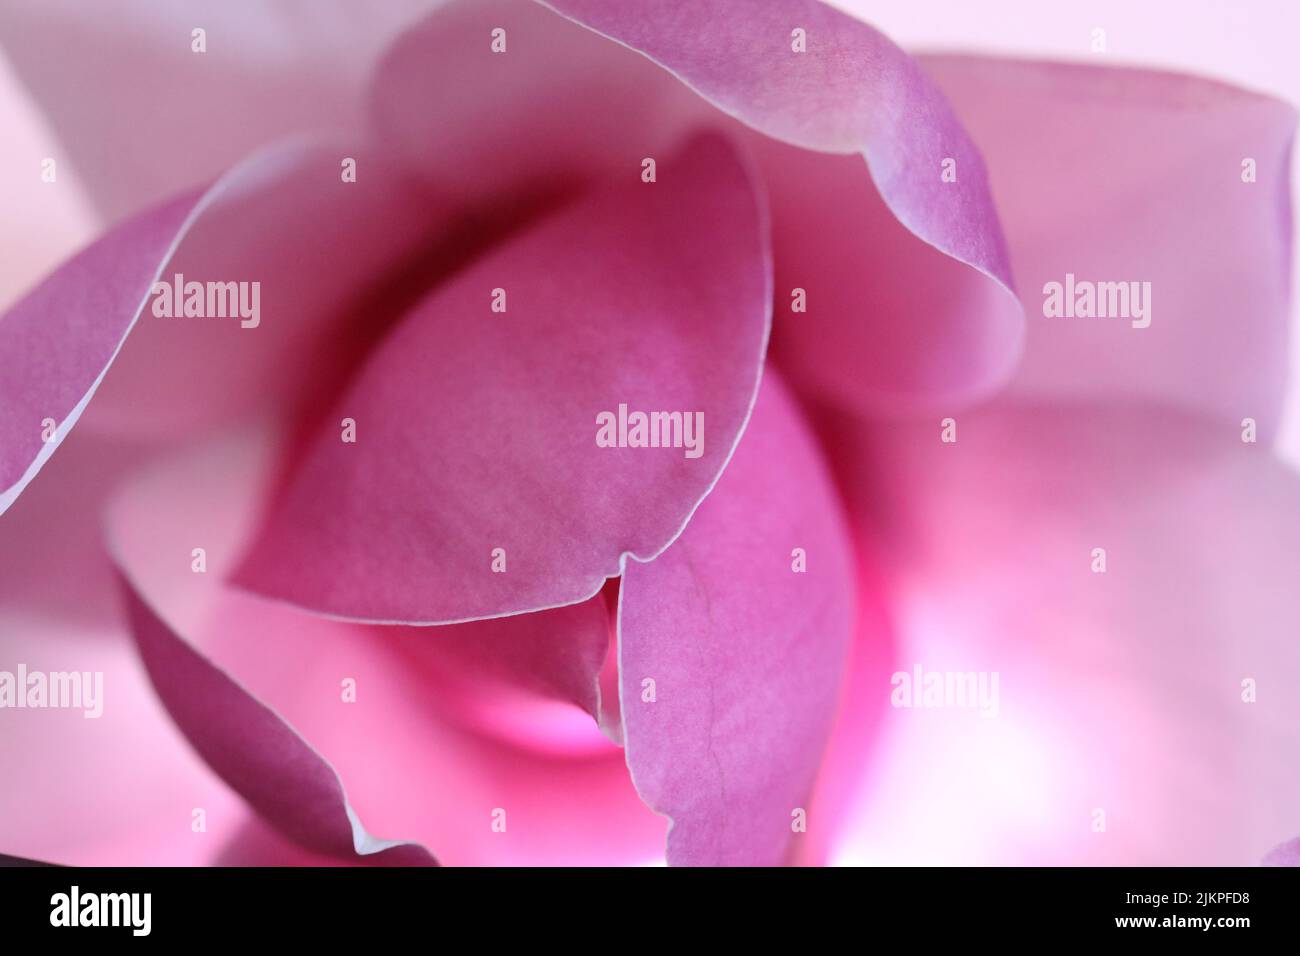 Messa a fuoco morbida e delicata piega rosa del fiore e dei petali magnolia. Il primo piano macro estremo mostra bordi luminosi nitidi e colori sottili hu Foto Stock